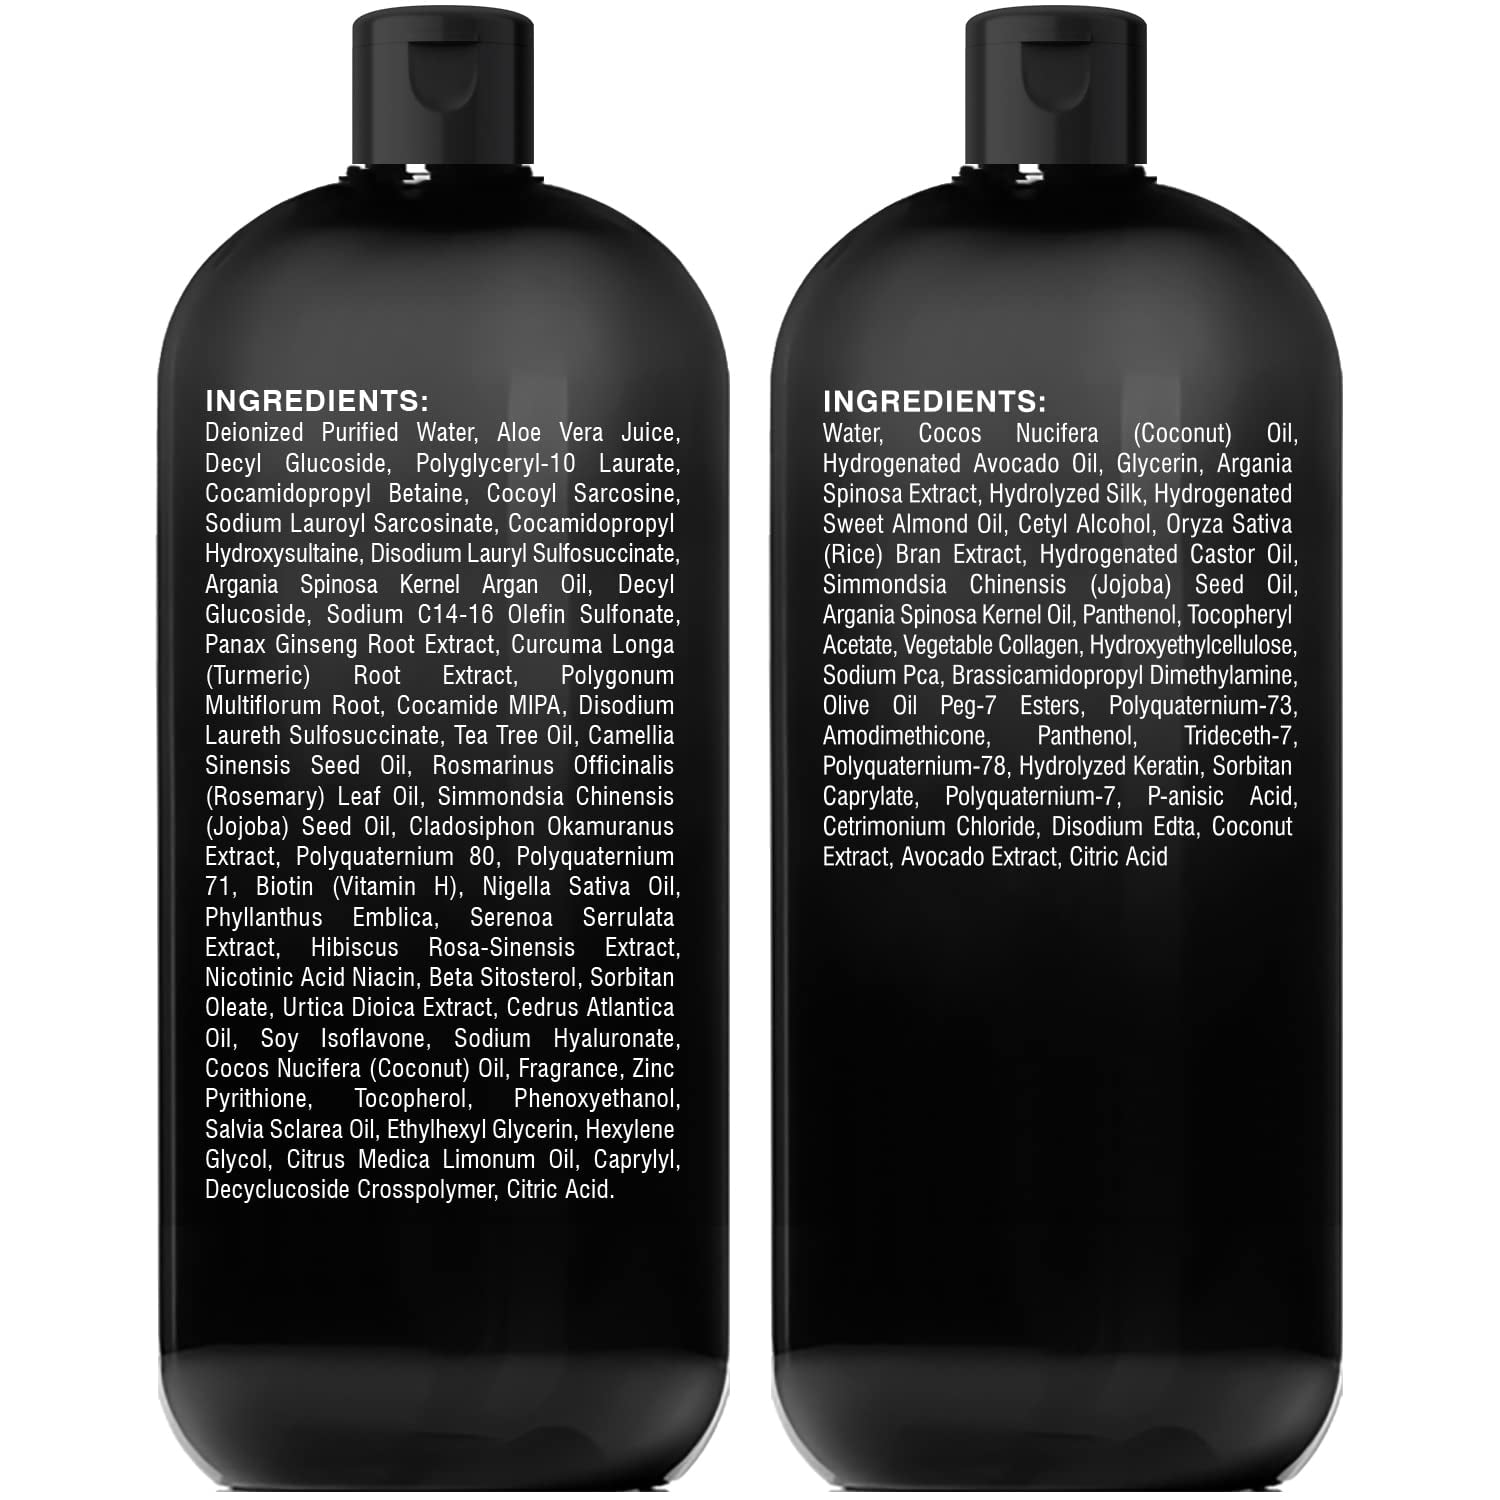 KV-1 Smart Protector Shampoo, shampoo with vitamin cocktail, 250ml - BEAUTY  MARKET